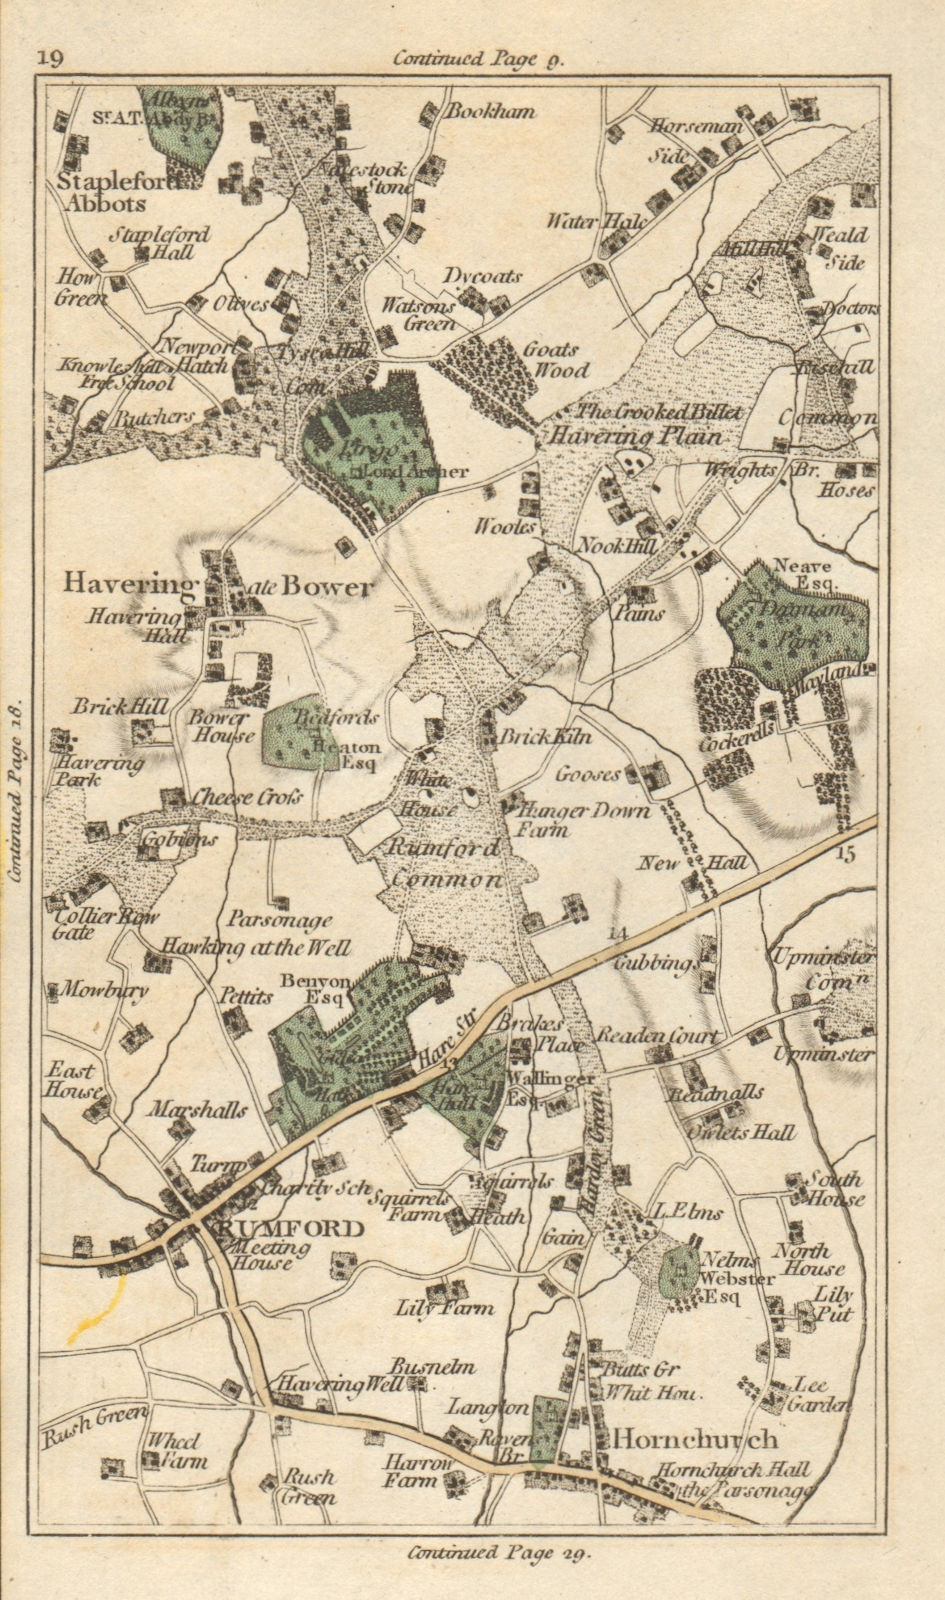 ROMFORD Stapleford Abbots Upminster Hornchurch Harold Wood Hill Park 1786 map